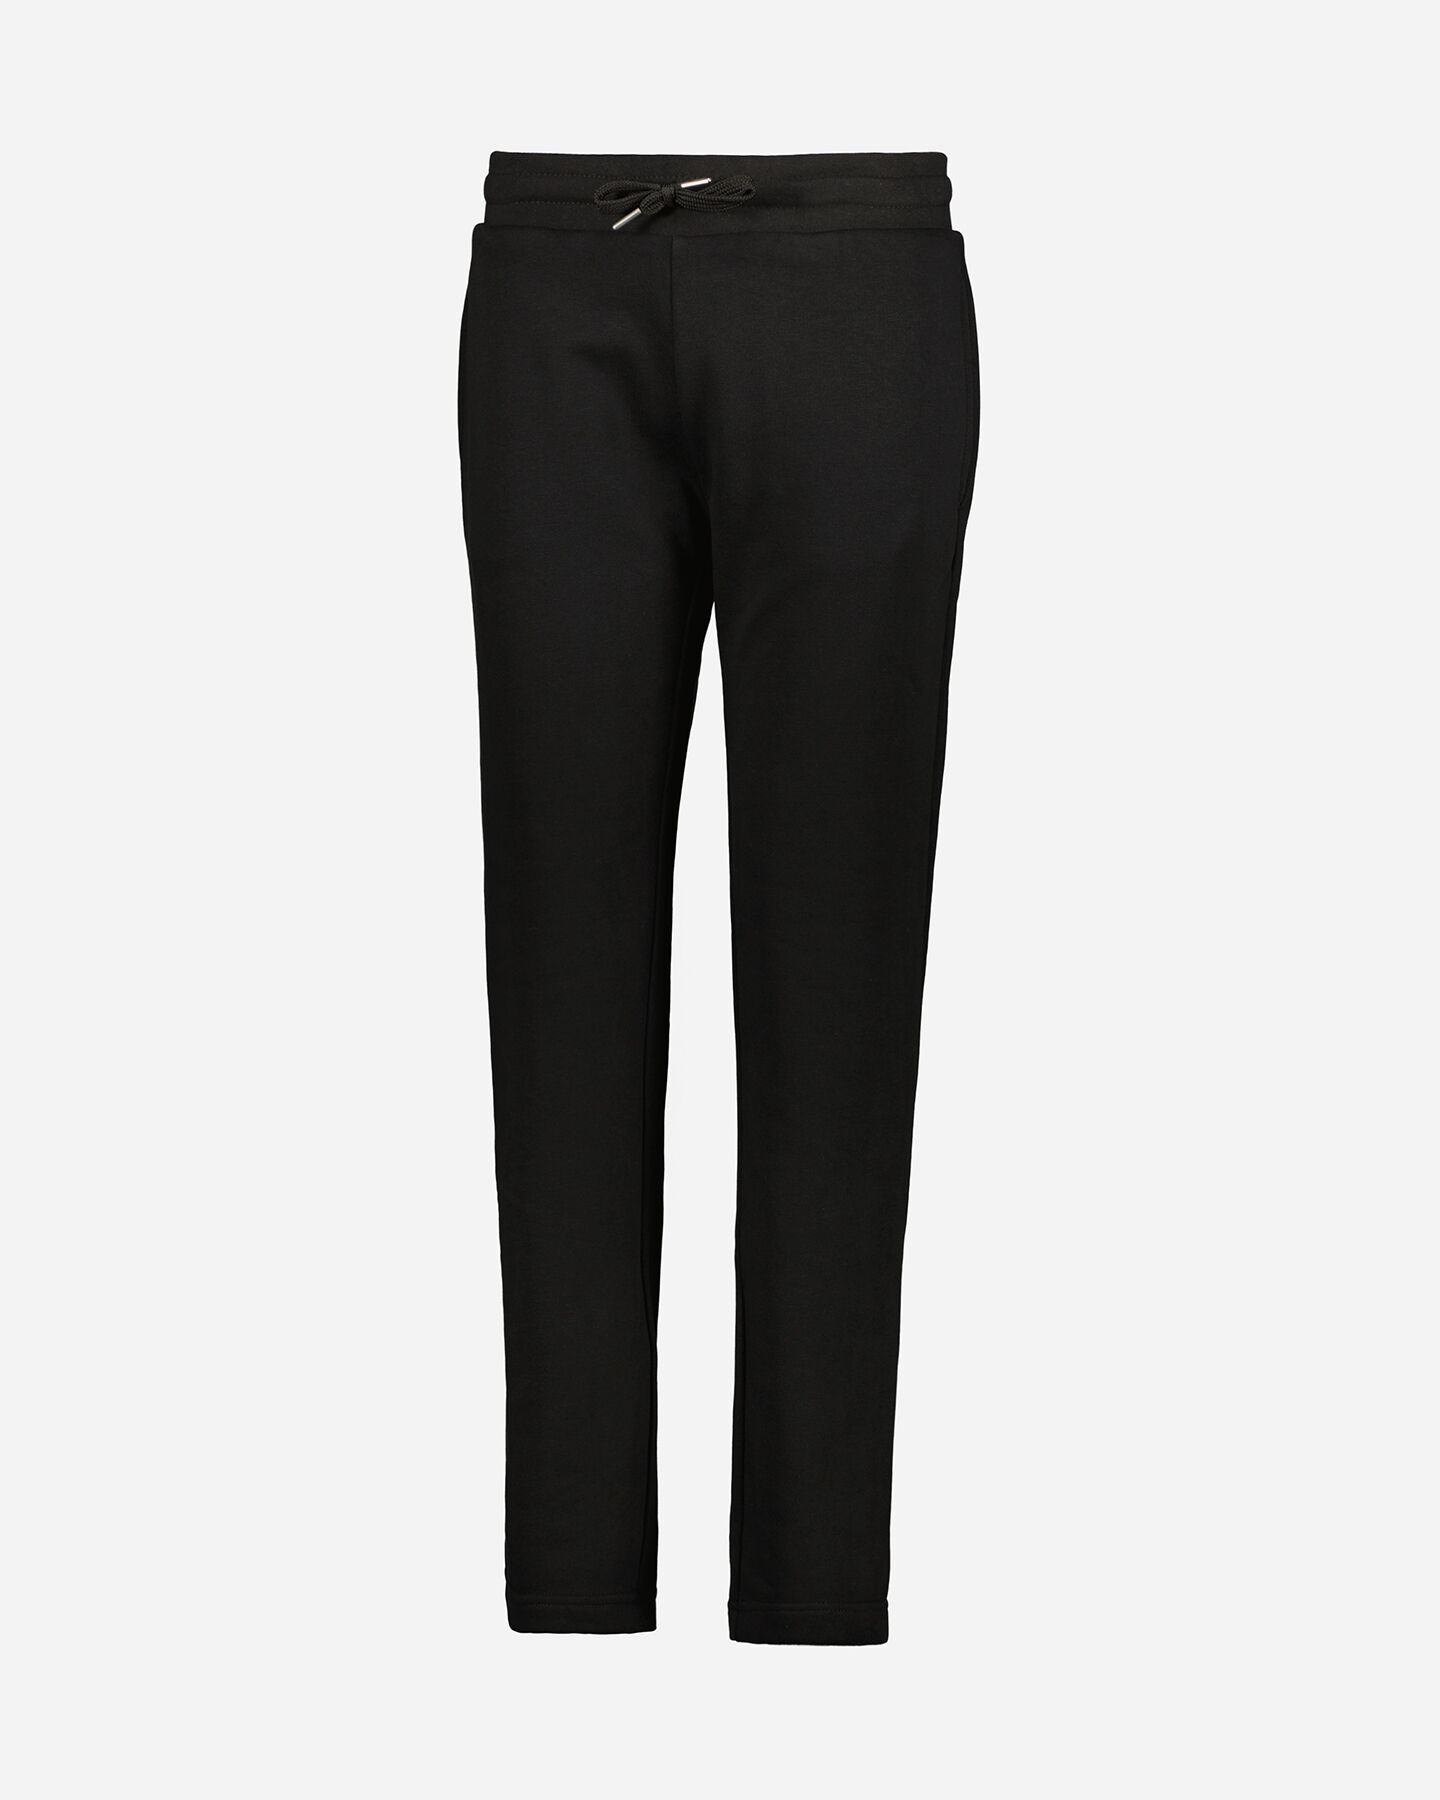  Pantalone ADMIRAL CLASSIC W S4106266|050|S scatto 0